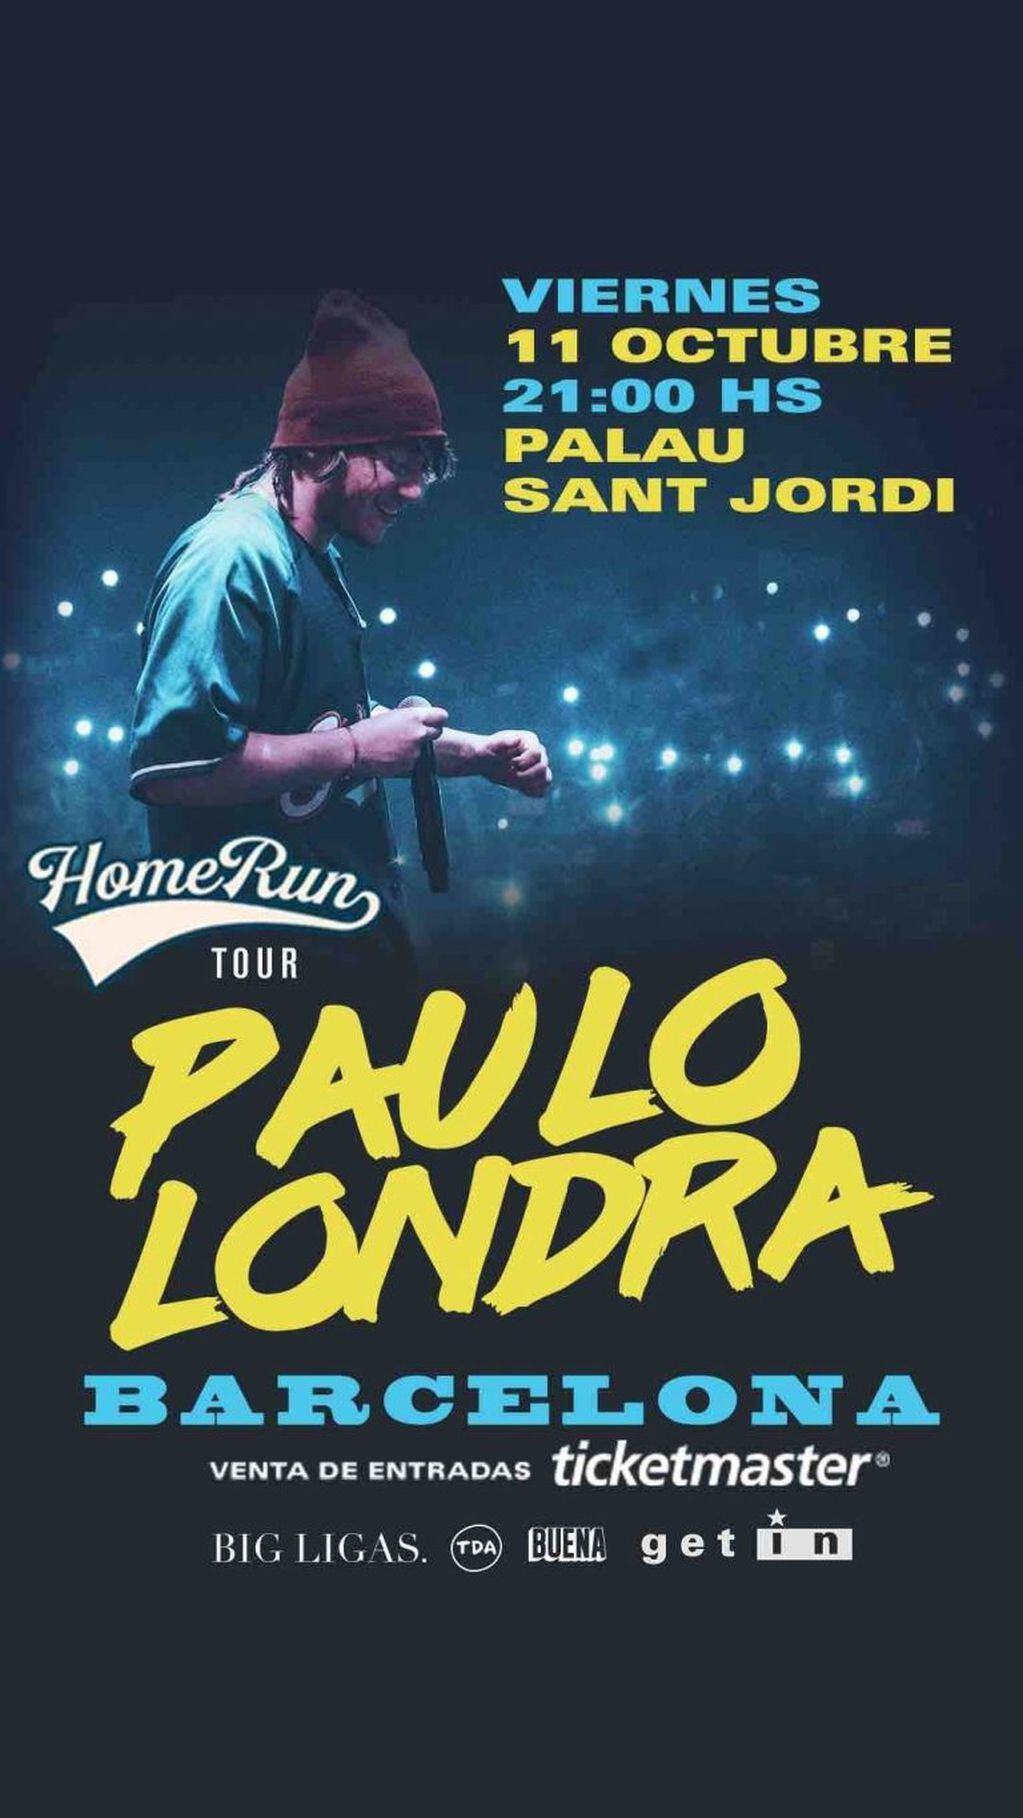 Paulo Londra actuará en el Palau Sant Jordi el 11 de octubre.